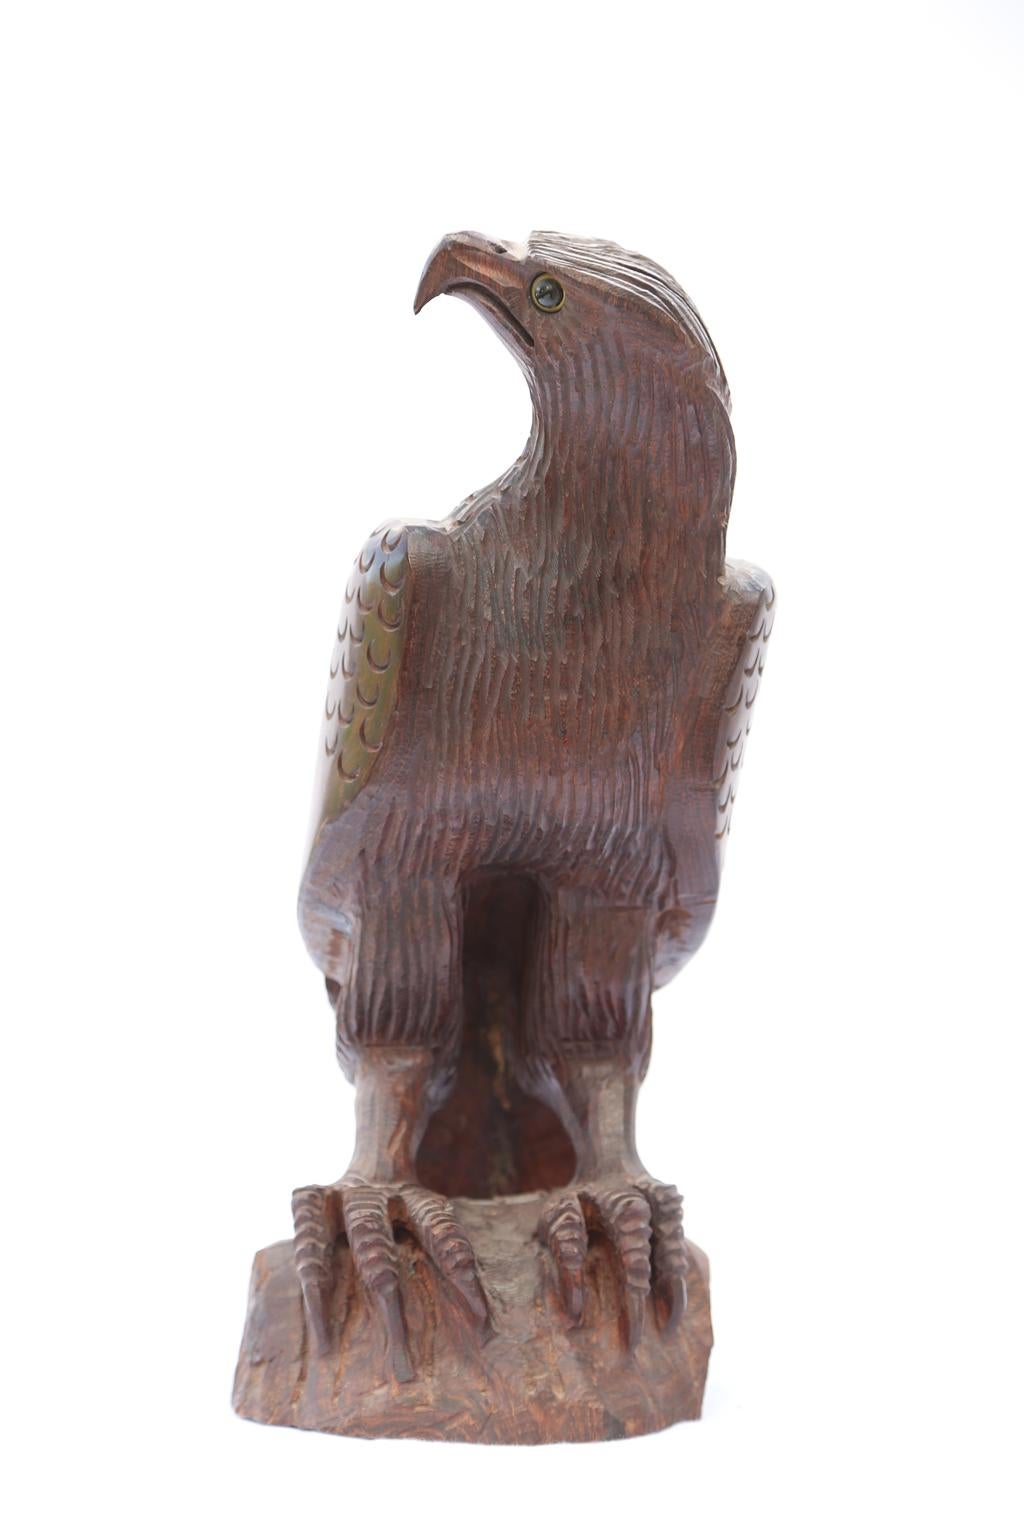 Handgeschnitzter Adler aus Palisanderholz, auf einem Felsen sitzend, mit Glasaugen. Stark stilisierter Raubvogel mit übertrieben eckigem Schnabel, Kopf und großen Krallen. 

Lager-ID: 1902.